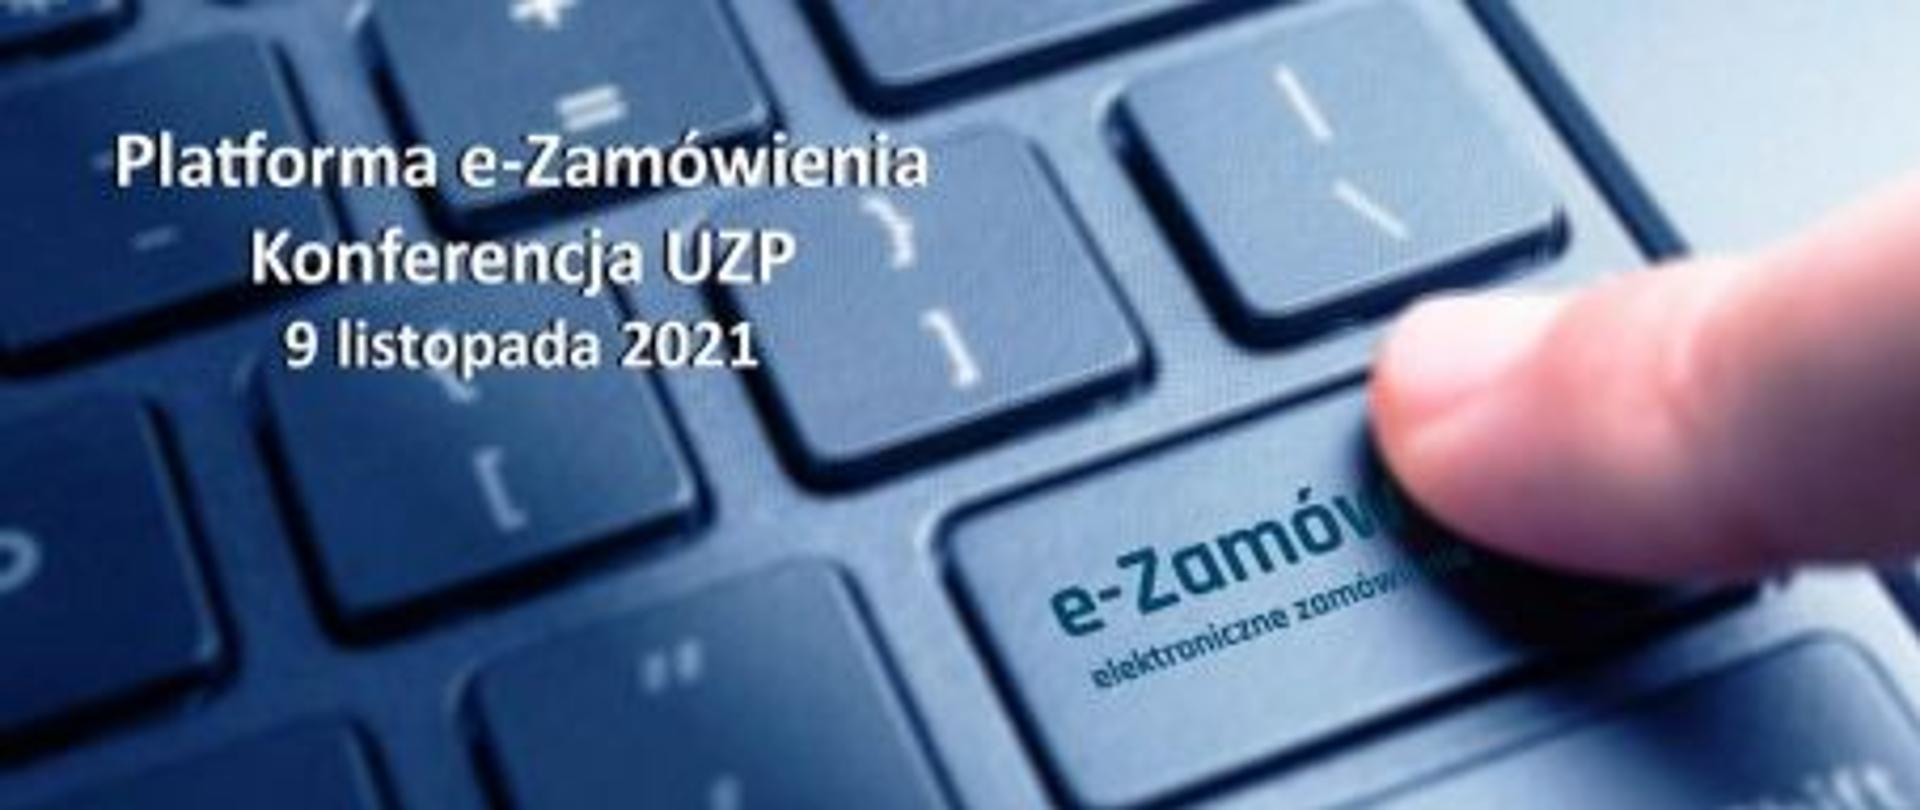 Platforma e-Zamówienia oraz jej funkcjonalności - Konferencja UZP 9 listopada 2021 w tle klawiatura wraz z palcem na przycisku e-Zamówienia zamówienia elektroniczne